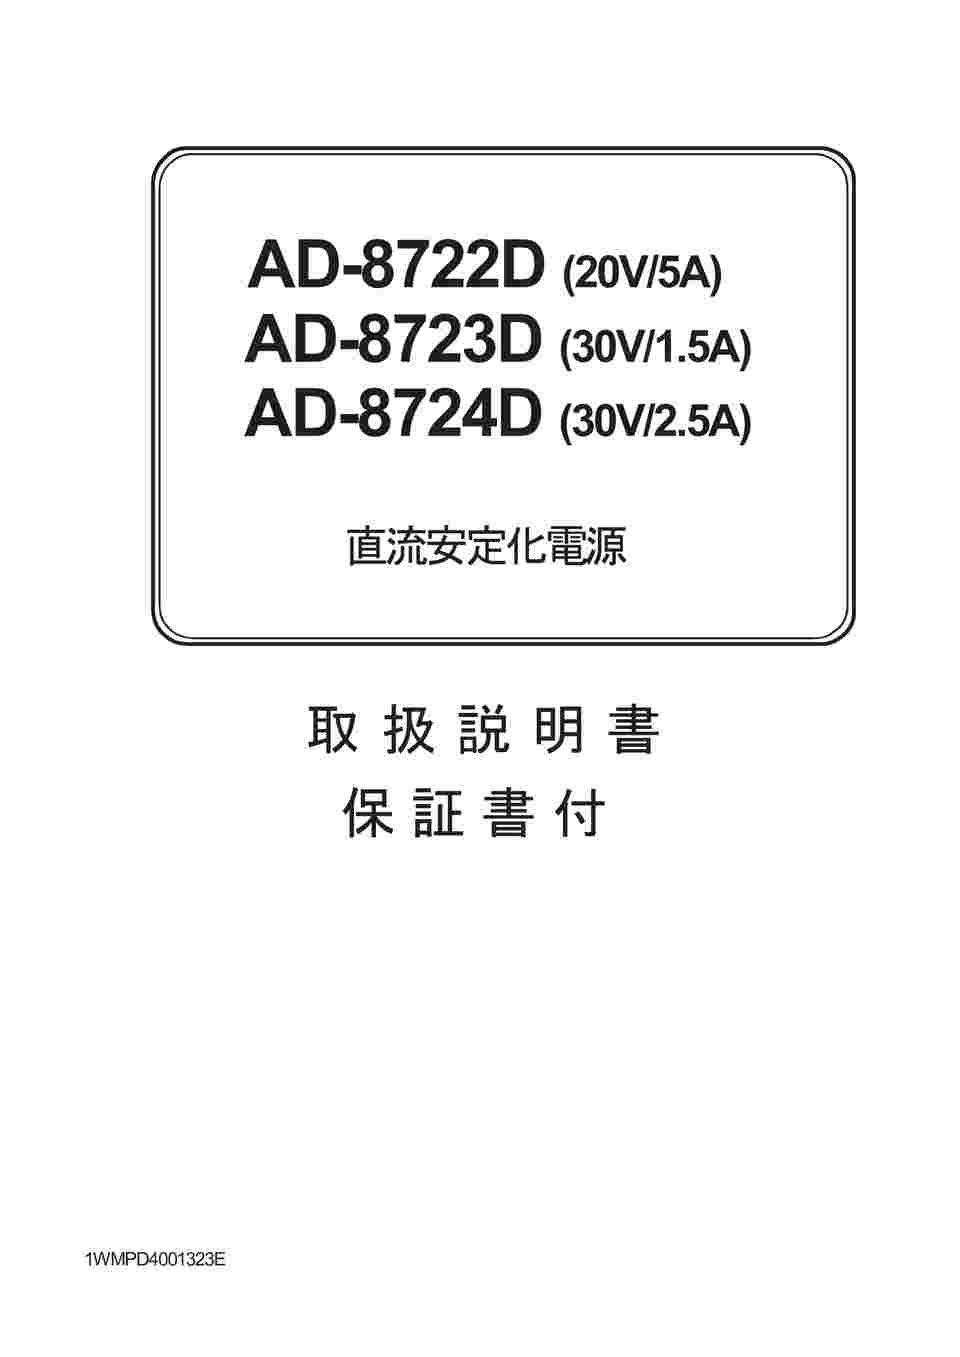 エー・アンド・デイ 直流安定化電源 AD872*シリーズ AD8723D-00A00 トレサビリティ体系図） 1台 30V-1.5A  一般（ISO）校正付（検査成績書